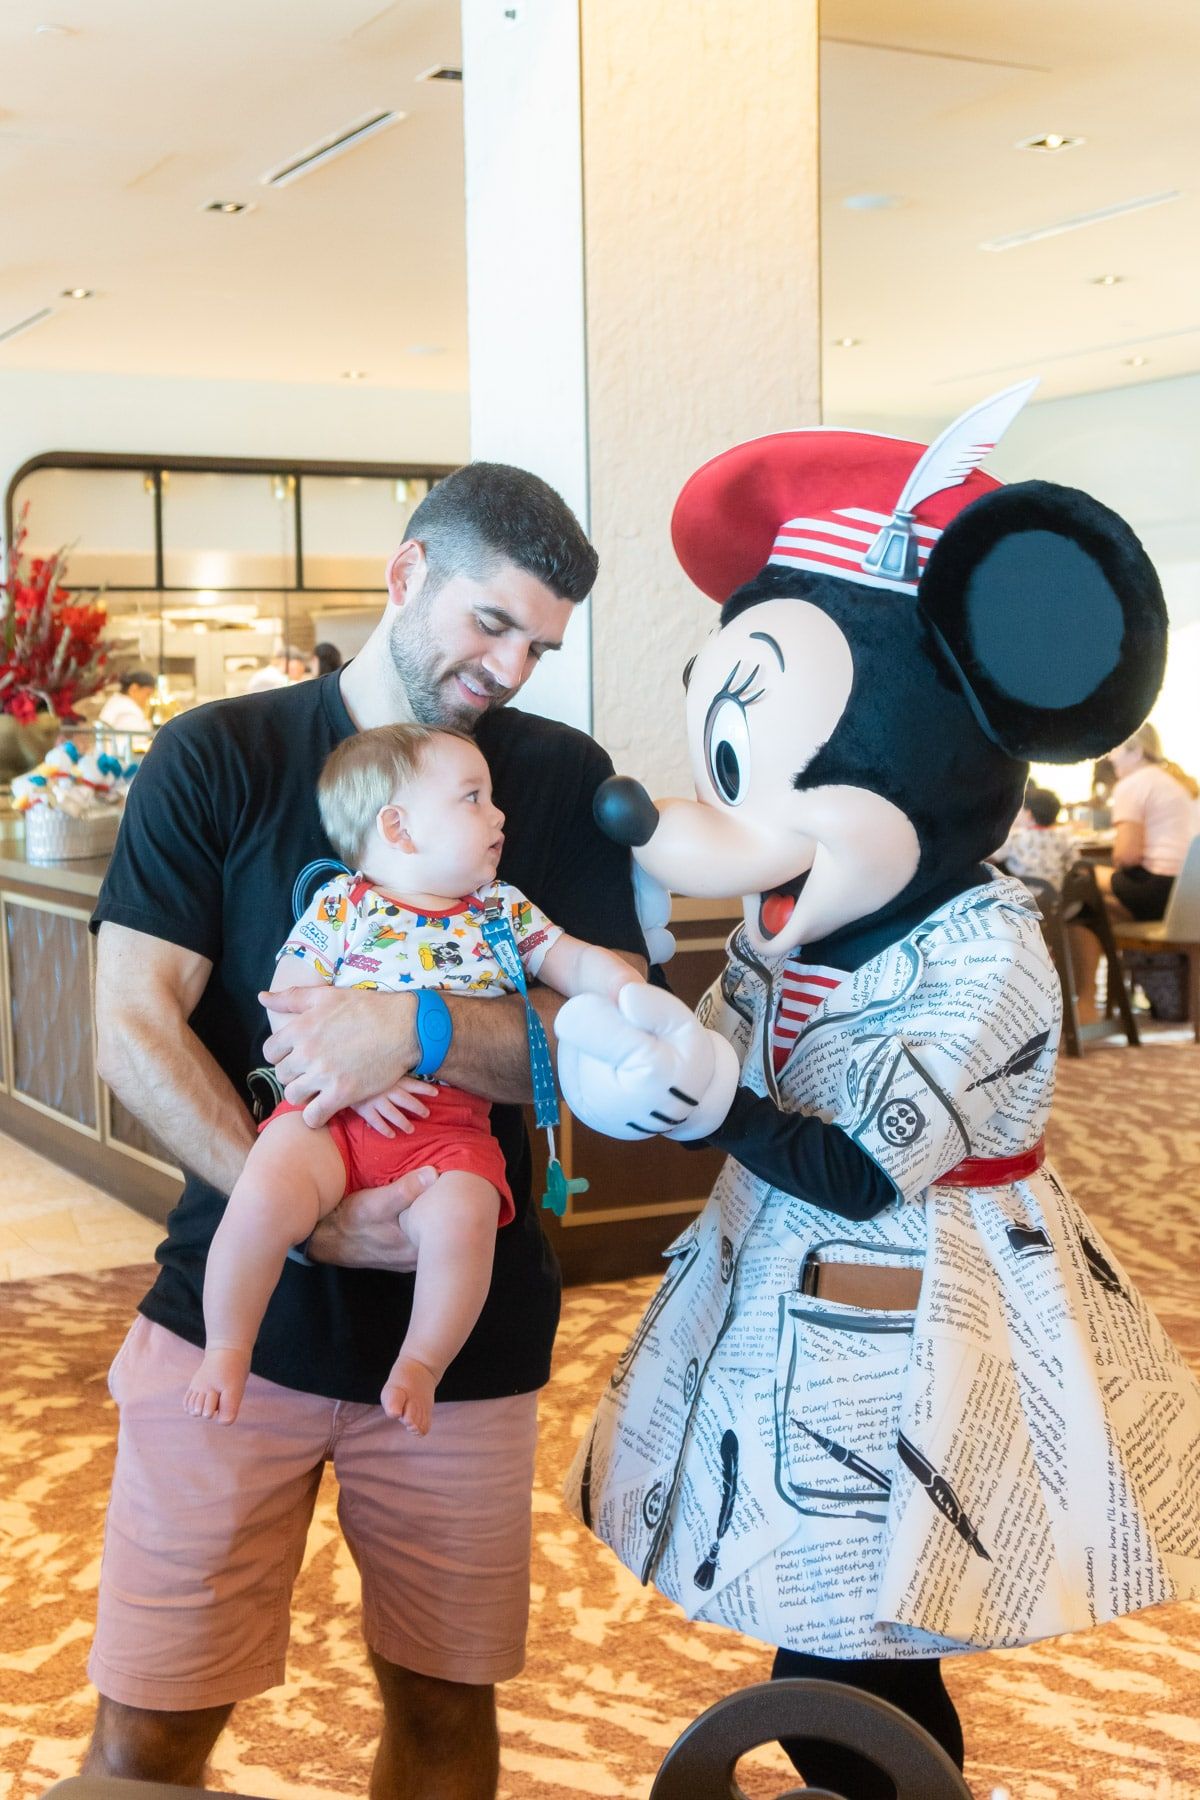 Home i nadó amb Minnie Mouse